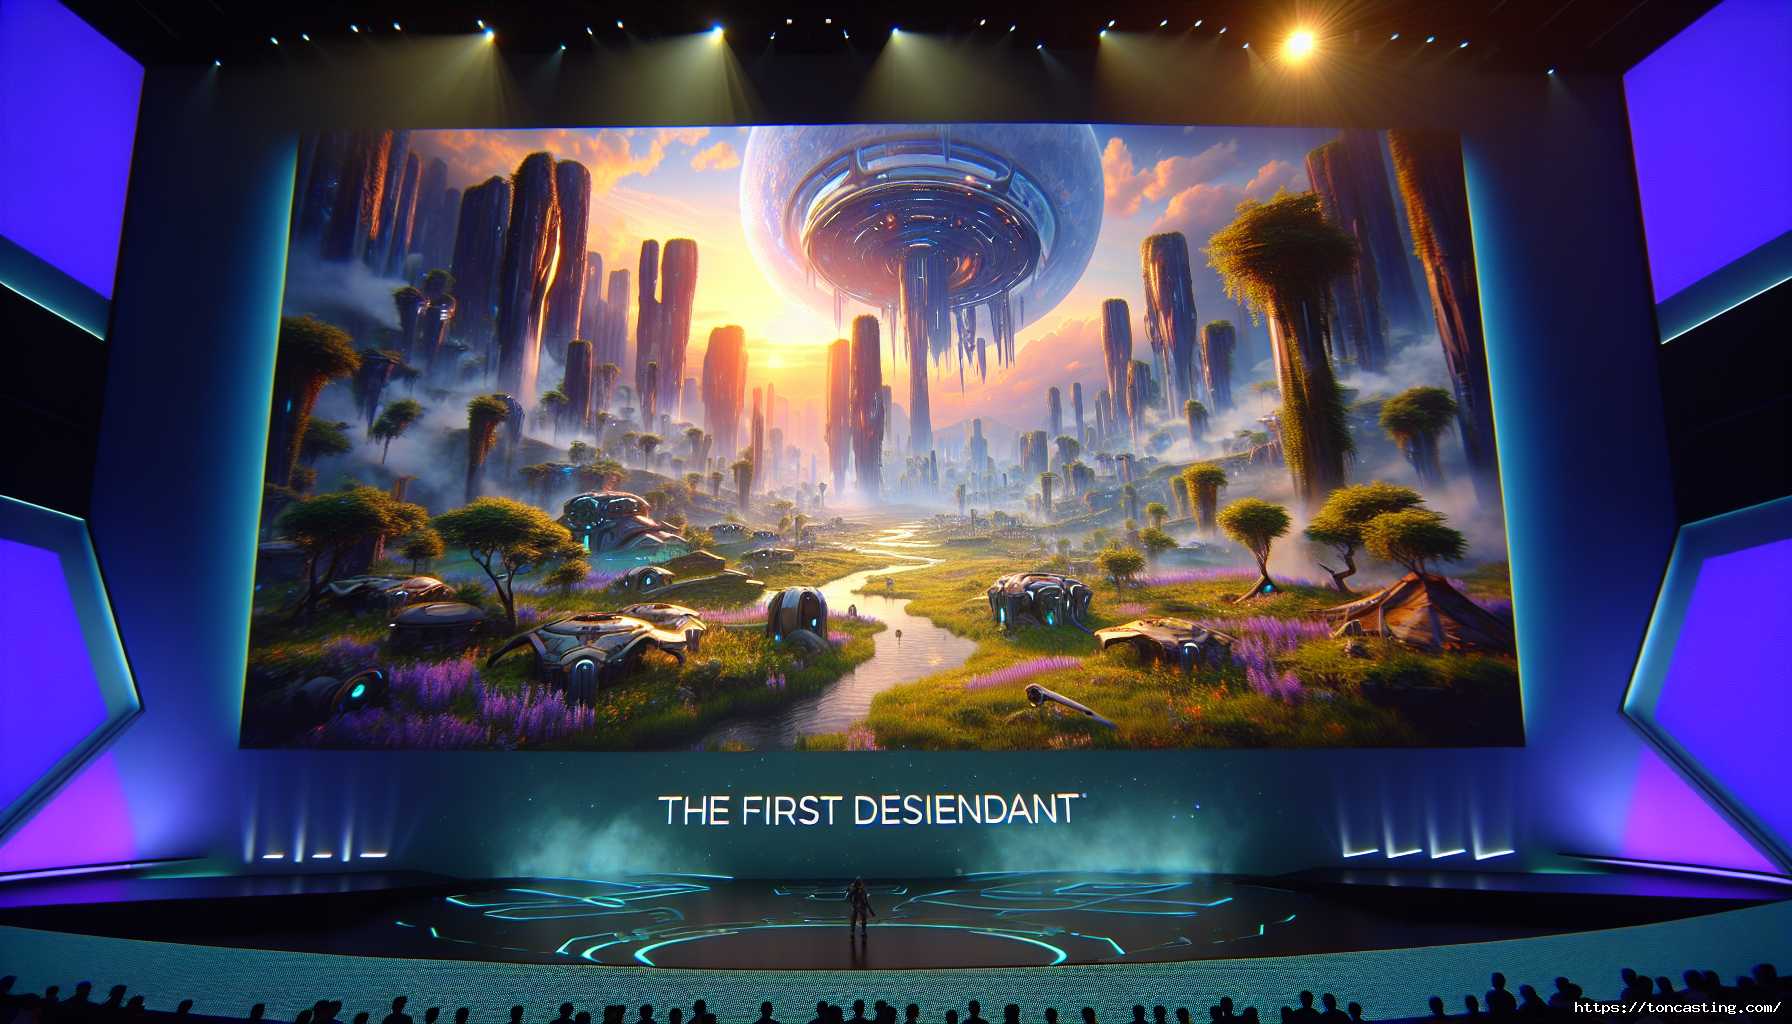 Présentation d'un paysage futuriste avec "The First Descendant" affiché à l'écran.